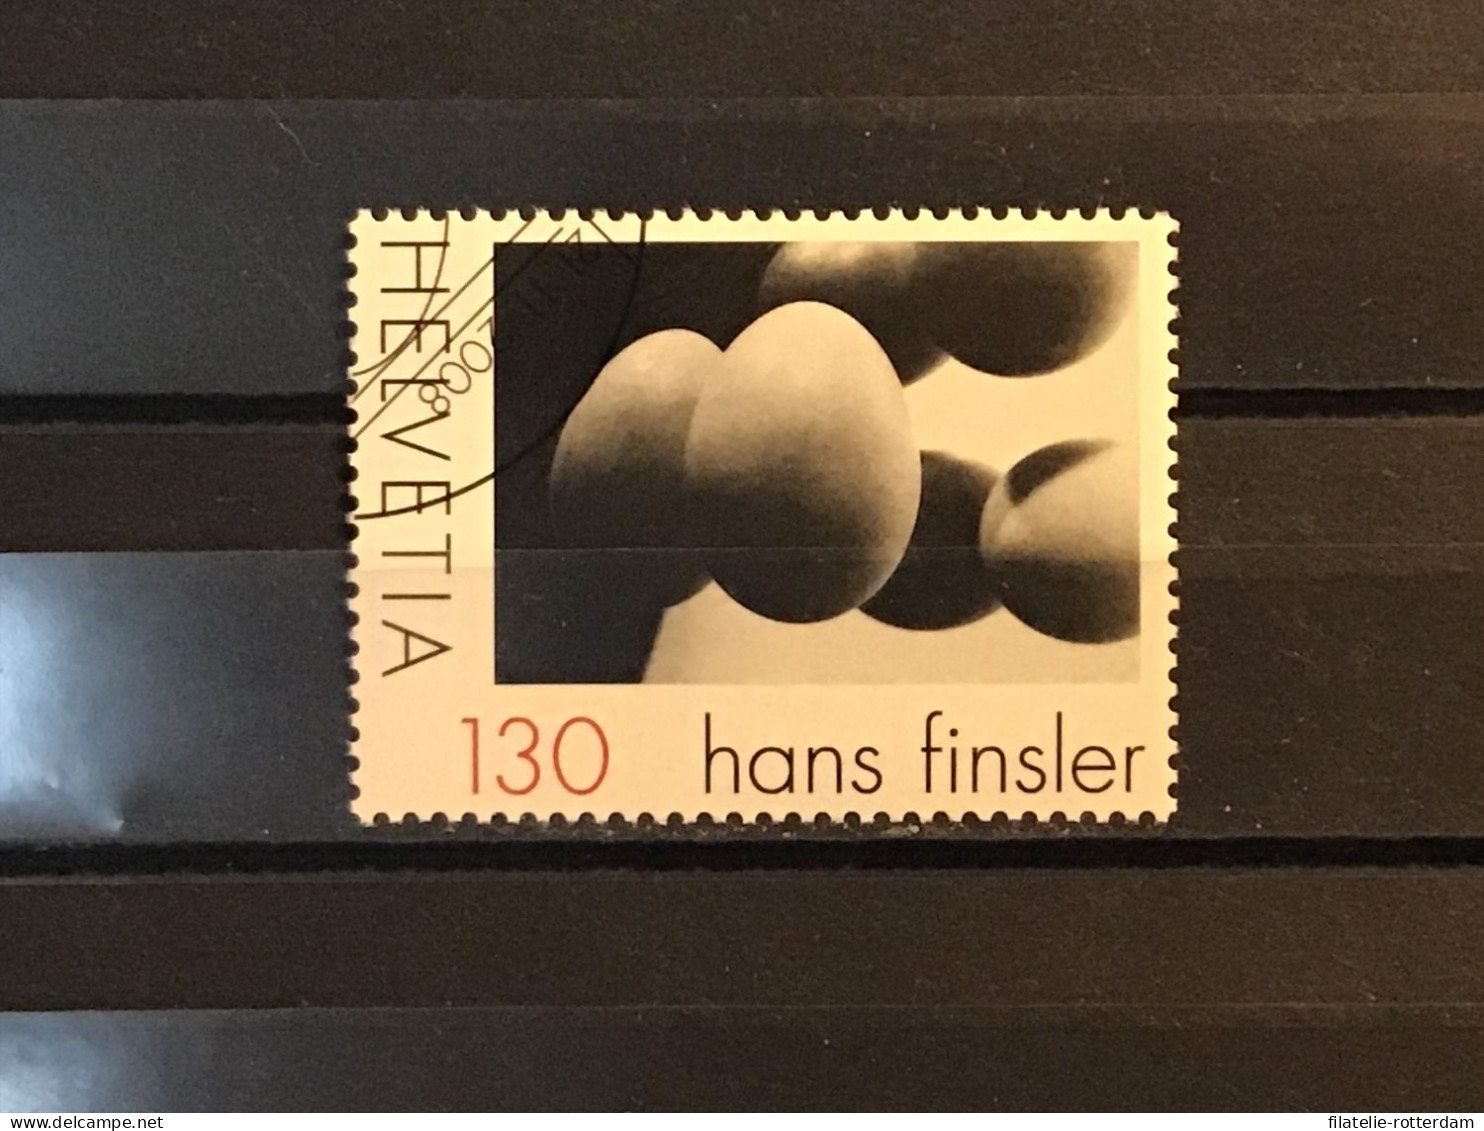 Switzerland / Zwitserland - Art, Hans Finsler (130) 2008 - Used Stamps